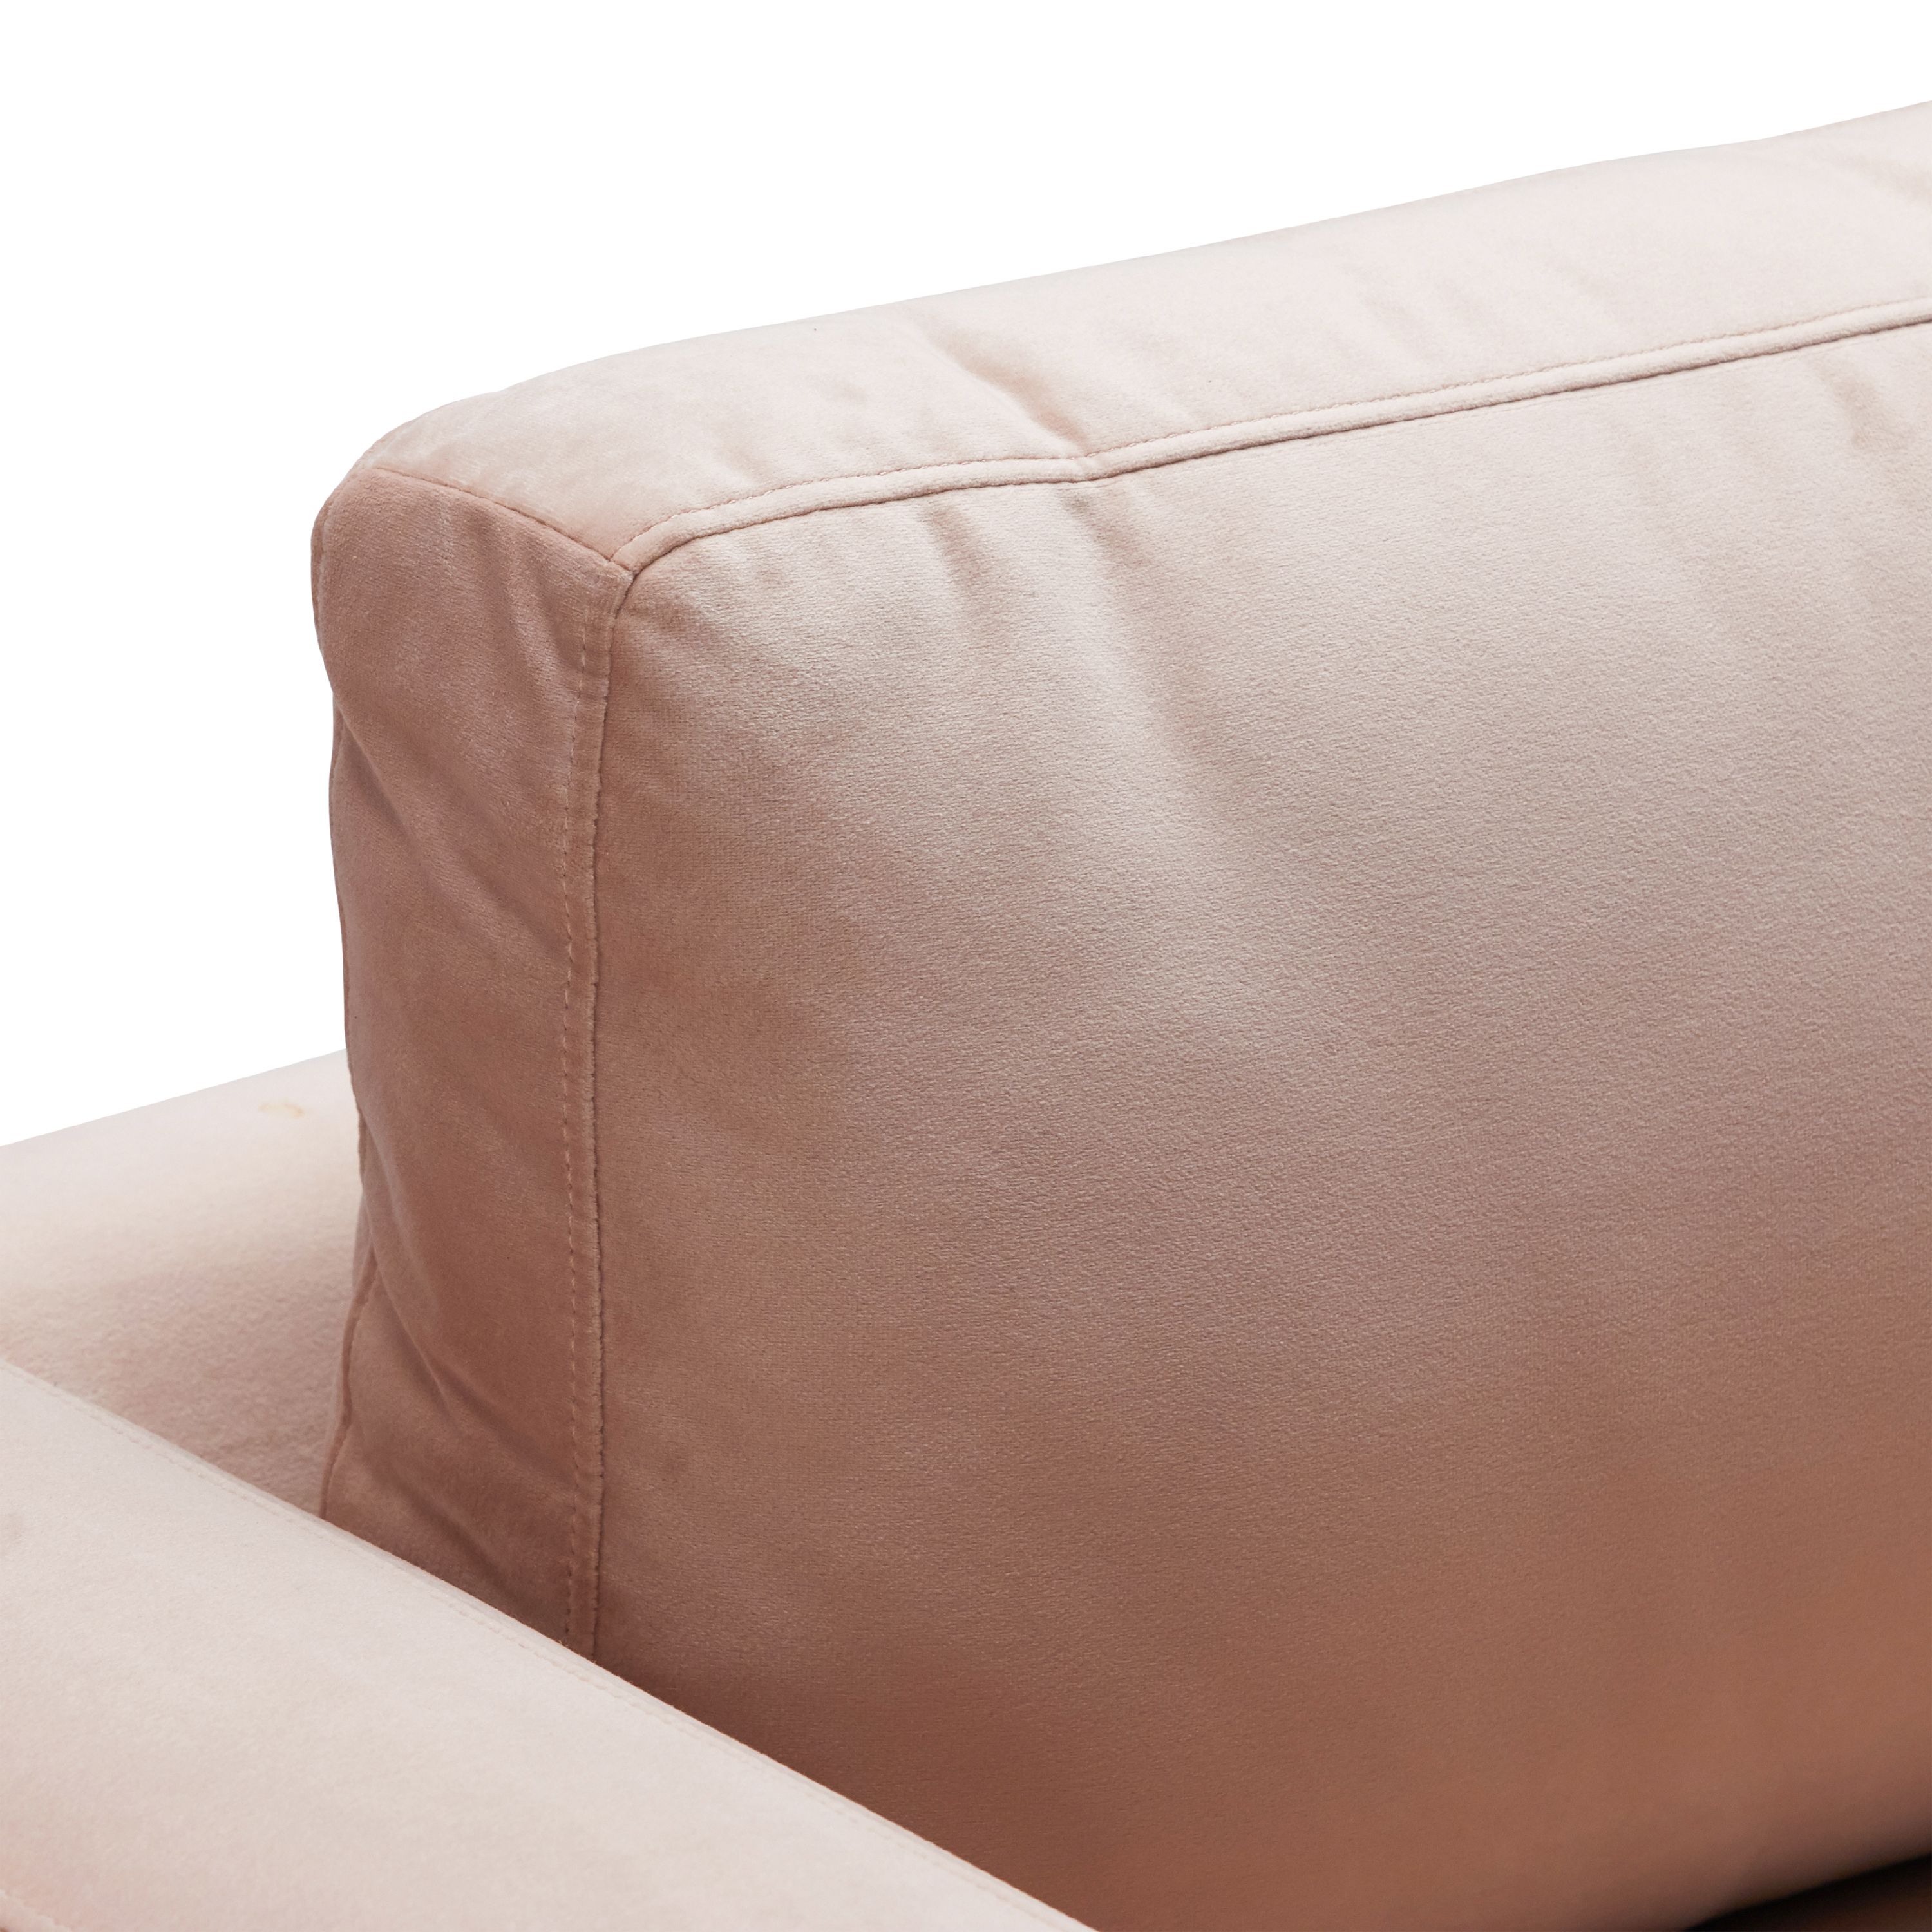 Drew Barrymore Flower Home Sofa, Pink Velvet - image 3 of 17